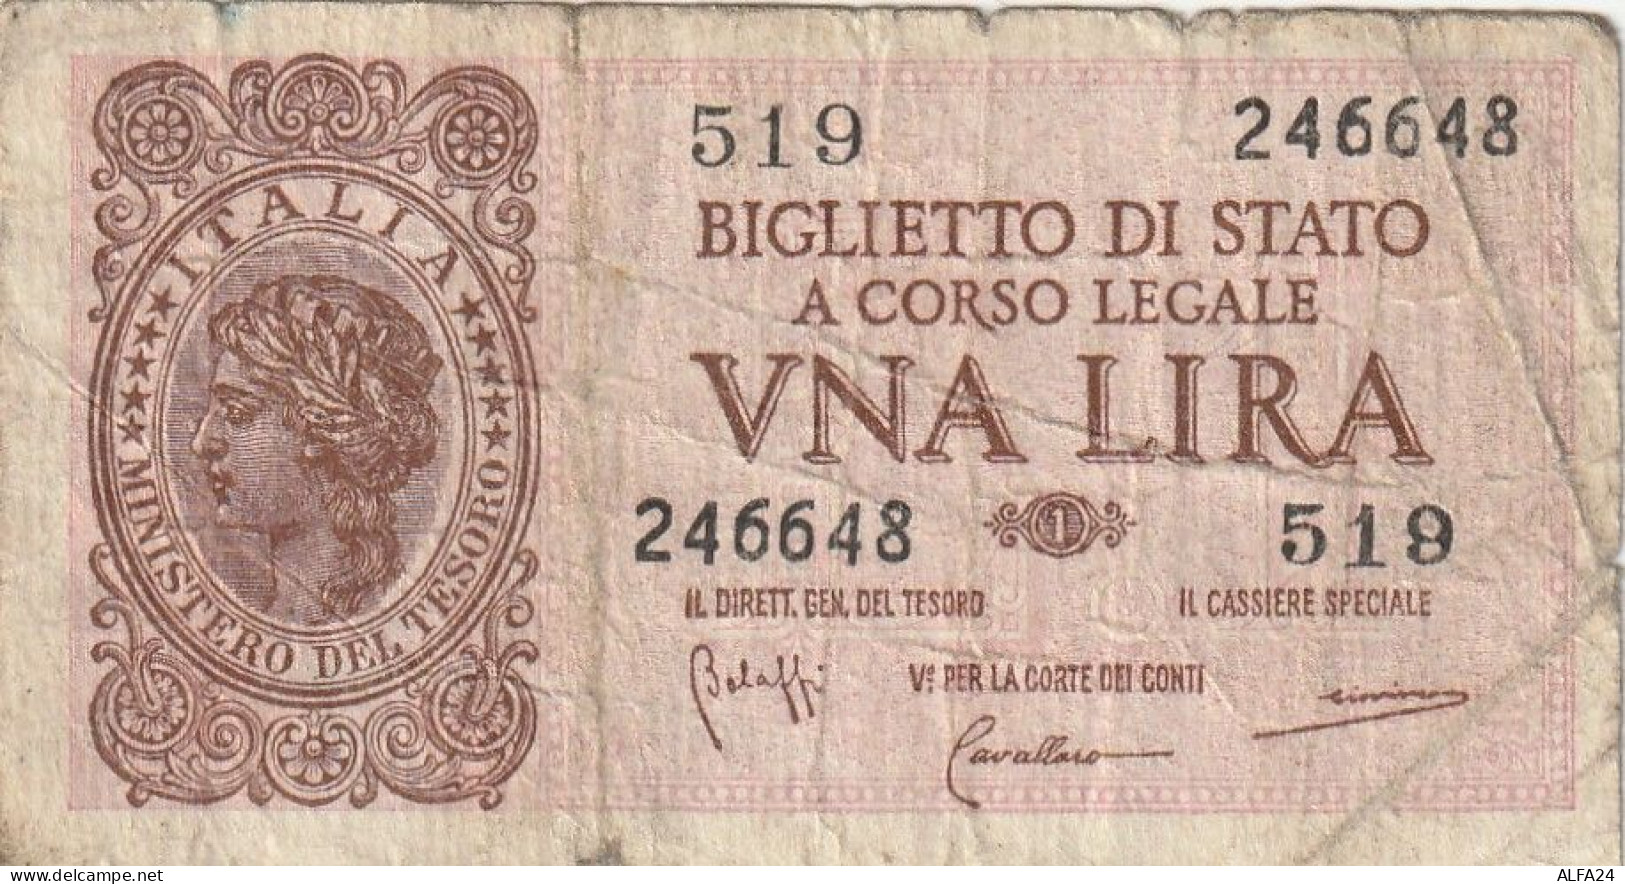 BANCONOTA BIGLIETTO DI STATO ITALIA 1 LIRA F (RY7343 - Italia – 1 Lira